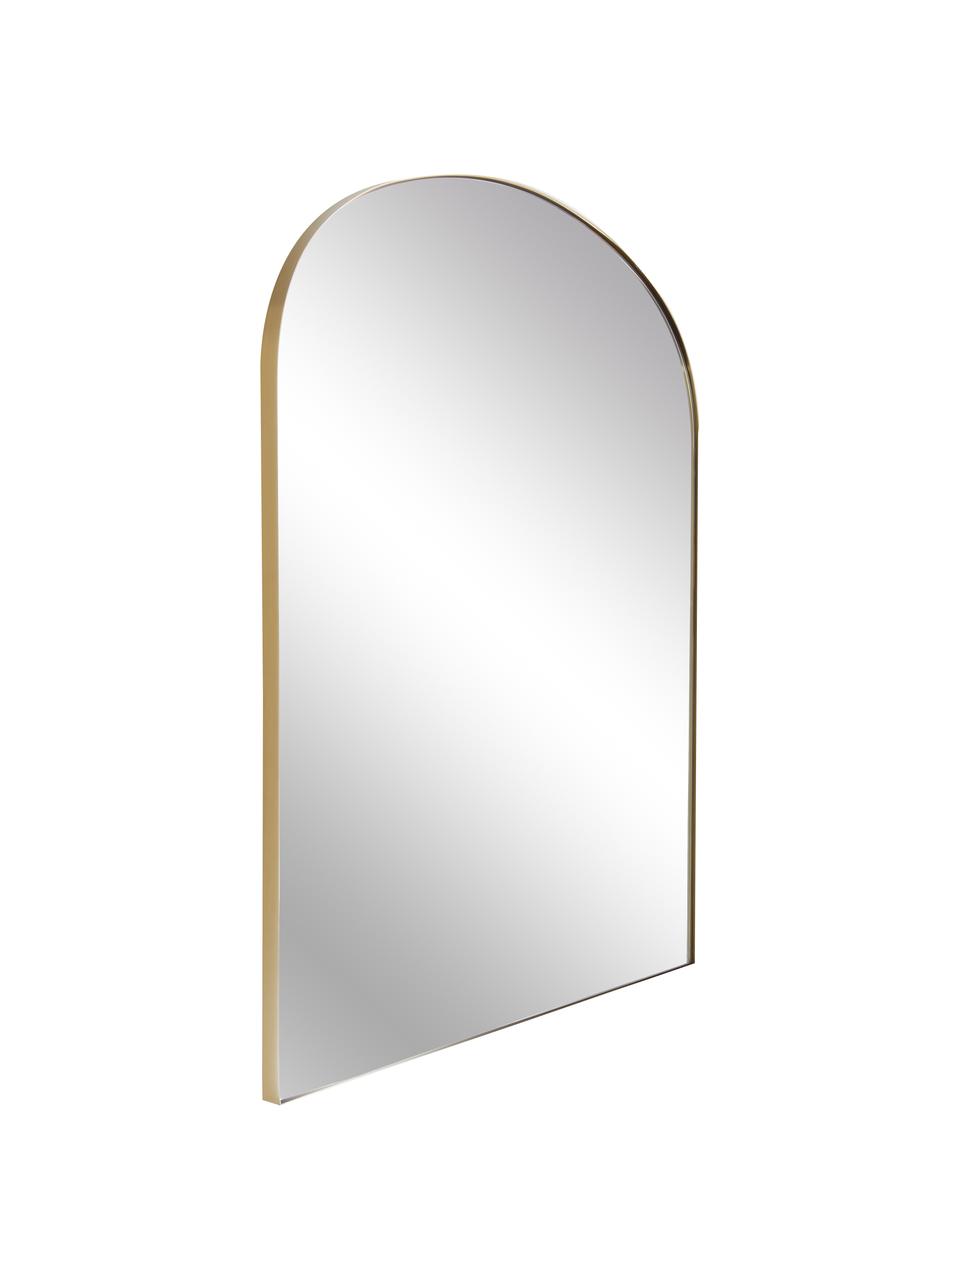 Wandspiegel Francis mit goldenem Metallrahmen, Rahmen: Metall, beschichtet, Rückseite: Mitteldichte Holzfaserpla, Spiegelfläche: Spiegelglas, Goldfarben, 80 x 85 cm